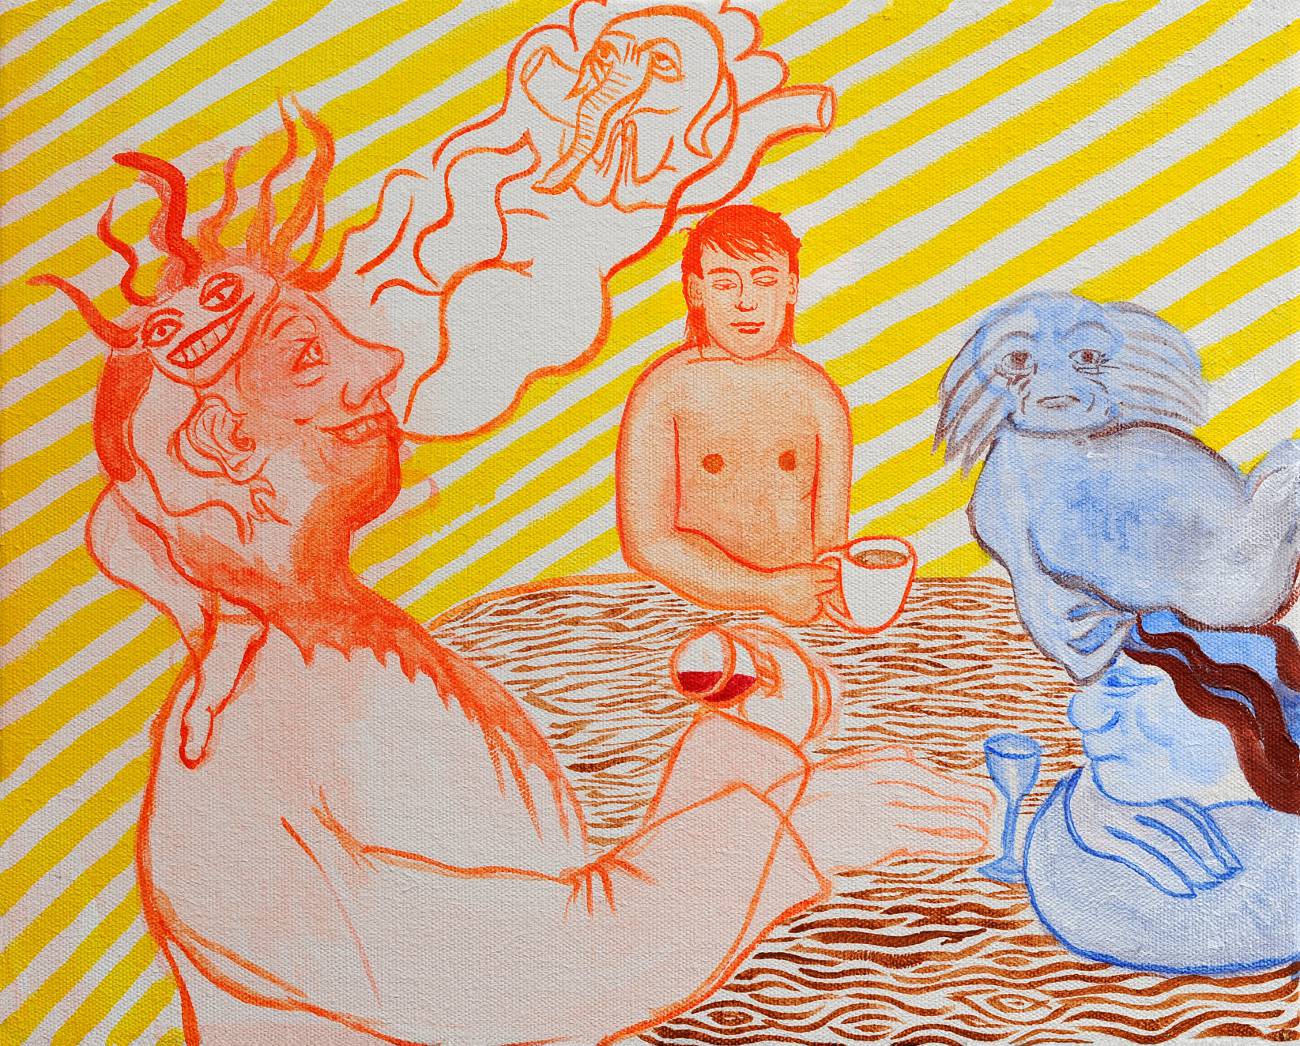 Jan Karpíšek: The Three Men, acryl on canvas, 40x50 cm, 2011